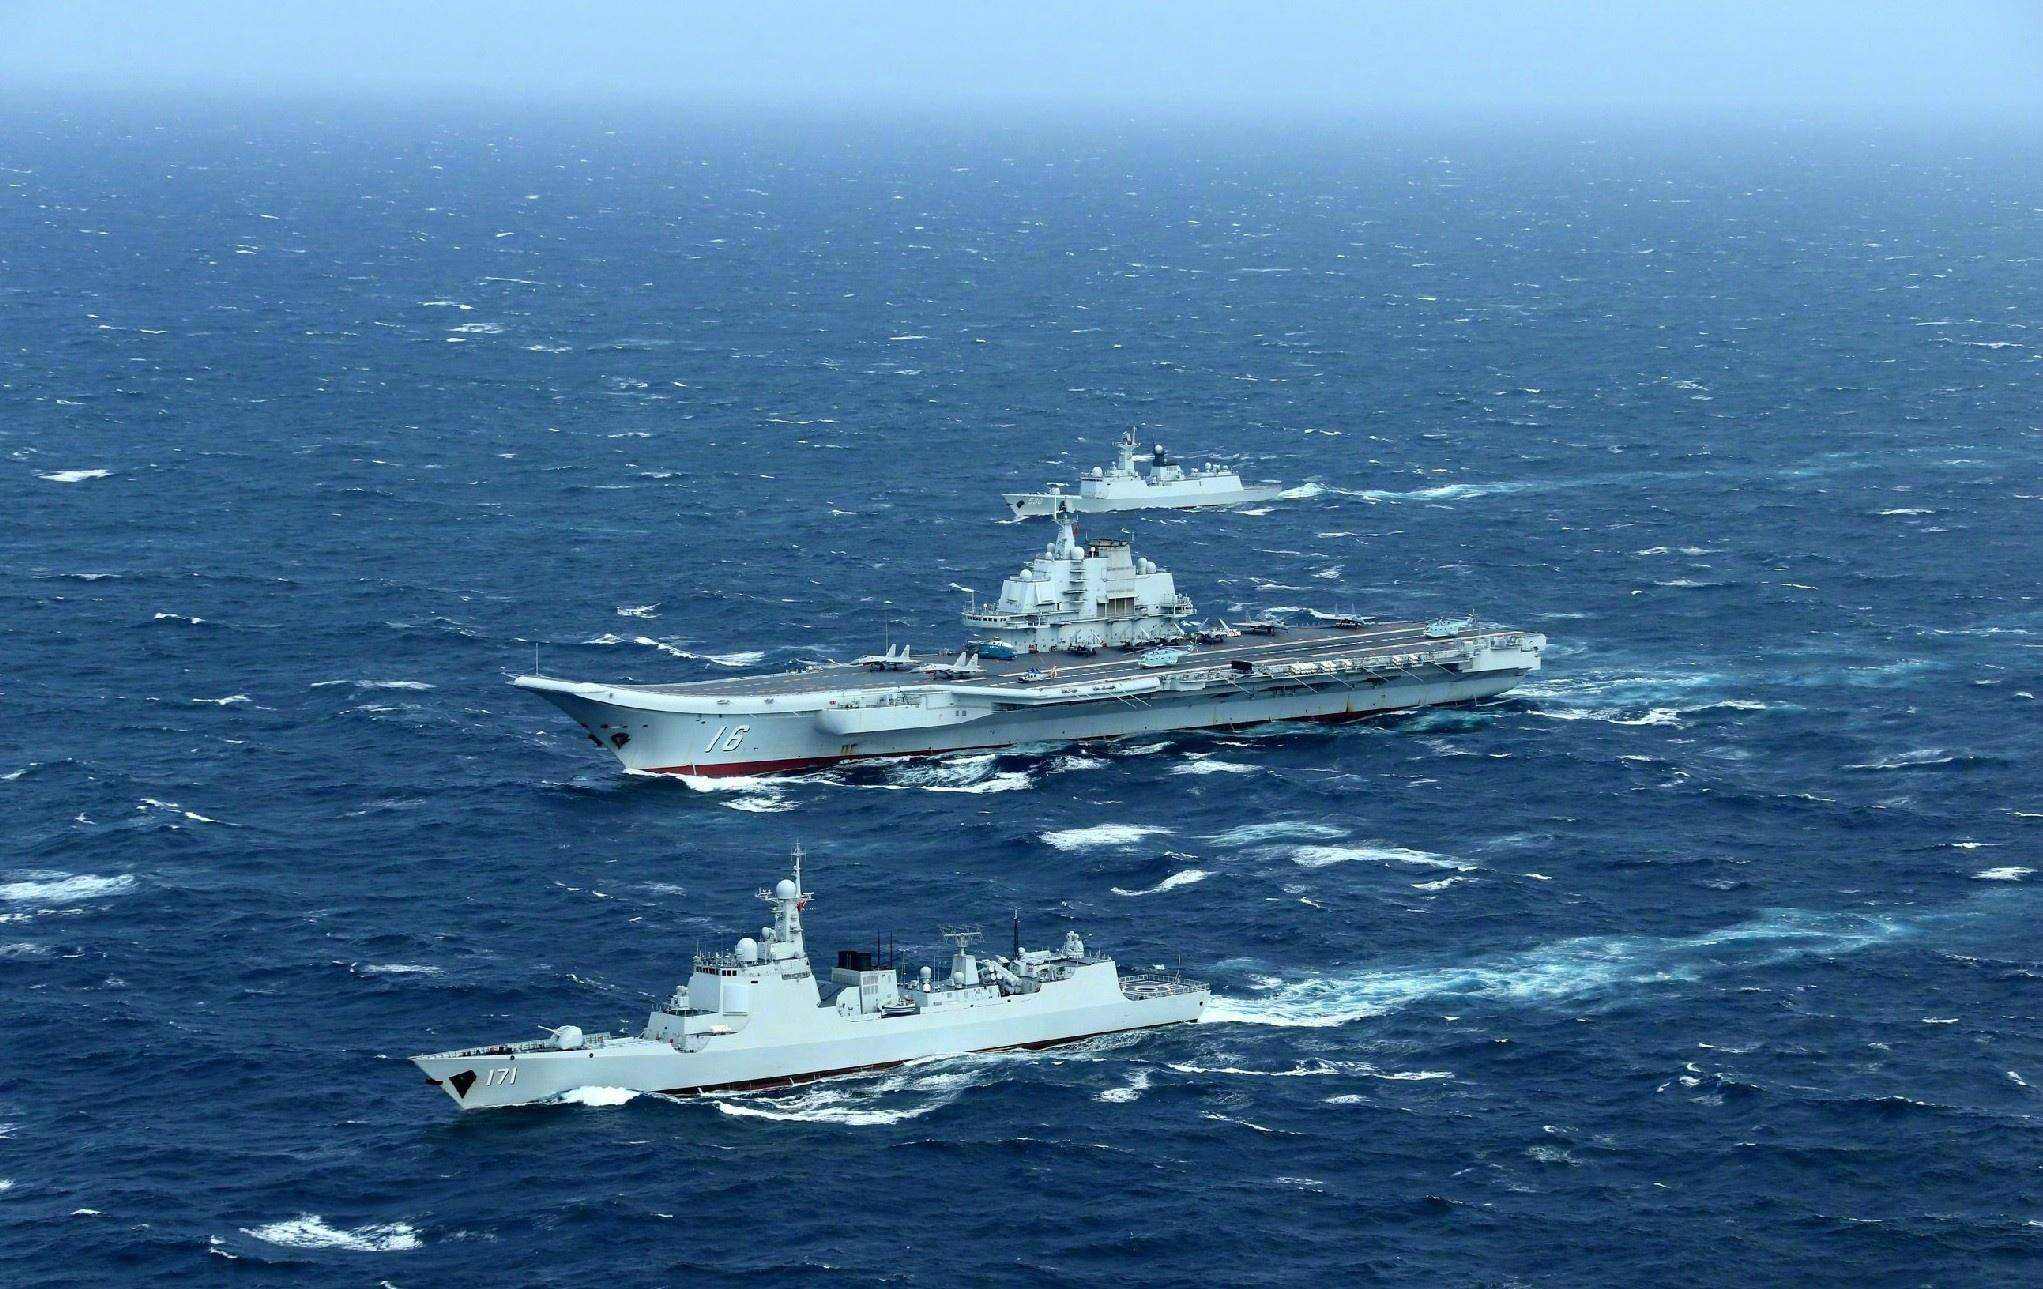 壁纸|大国巨舰 踏浪而来 庆祝人民海军成立69周年 - 中国军网